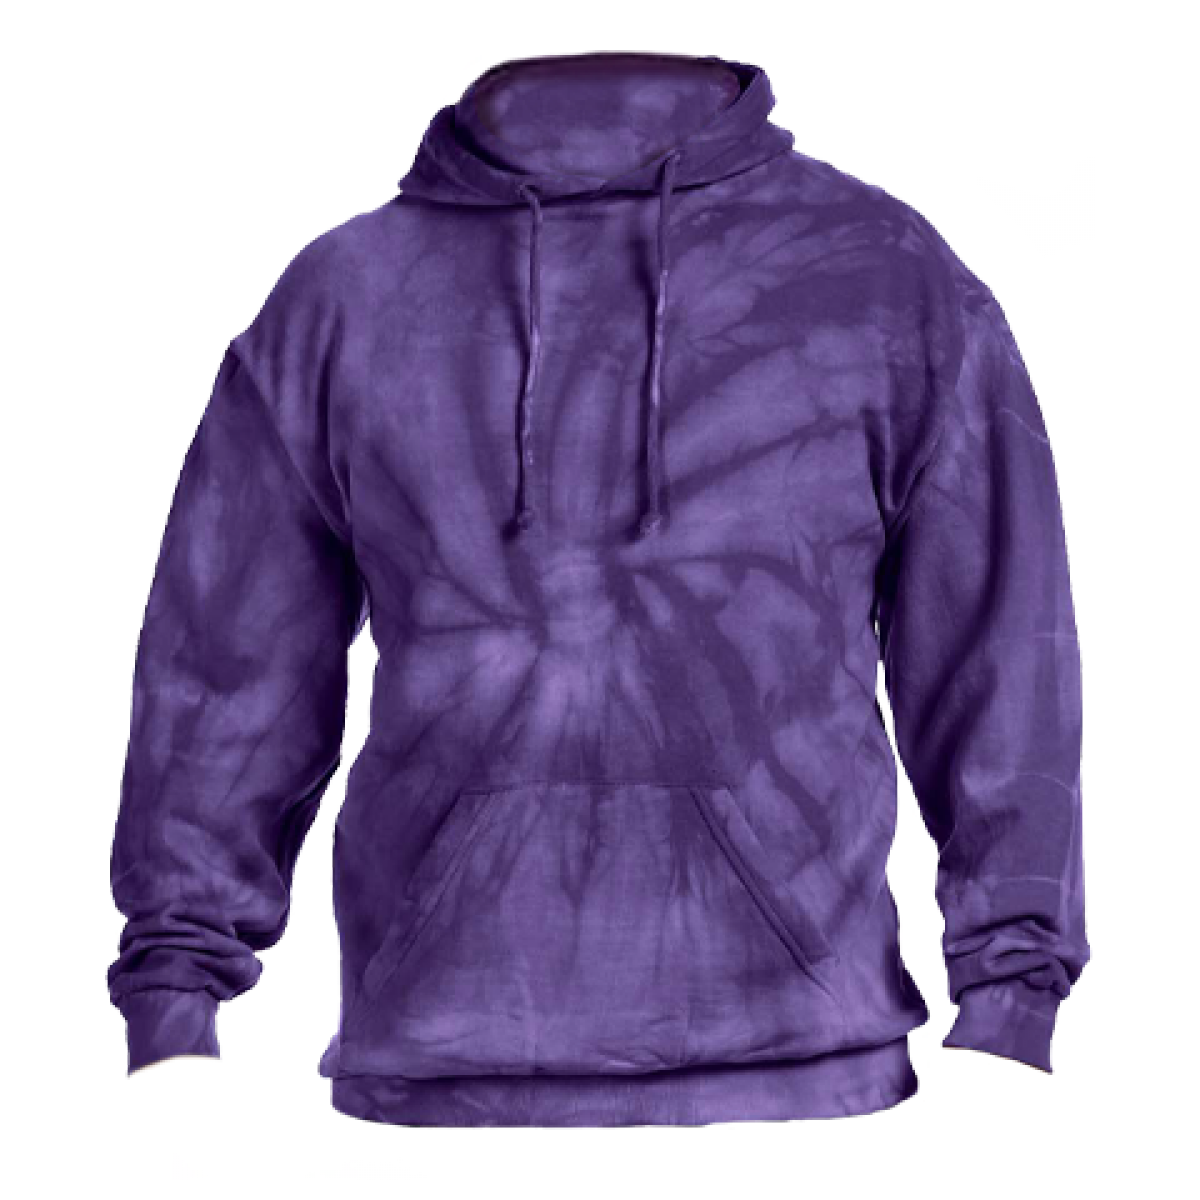 Cotton Hoody / Tie Dye Purple